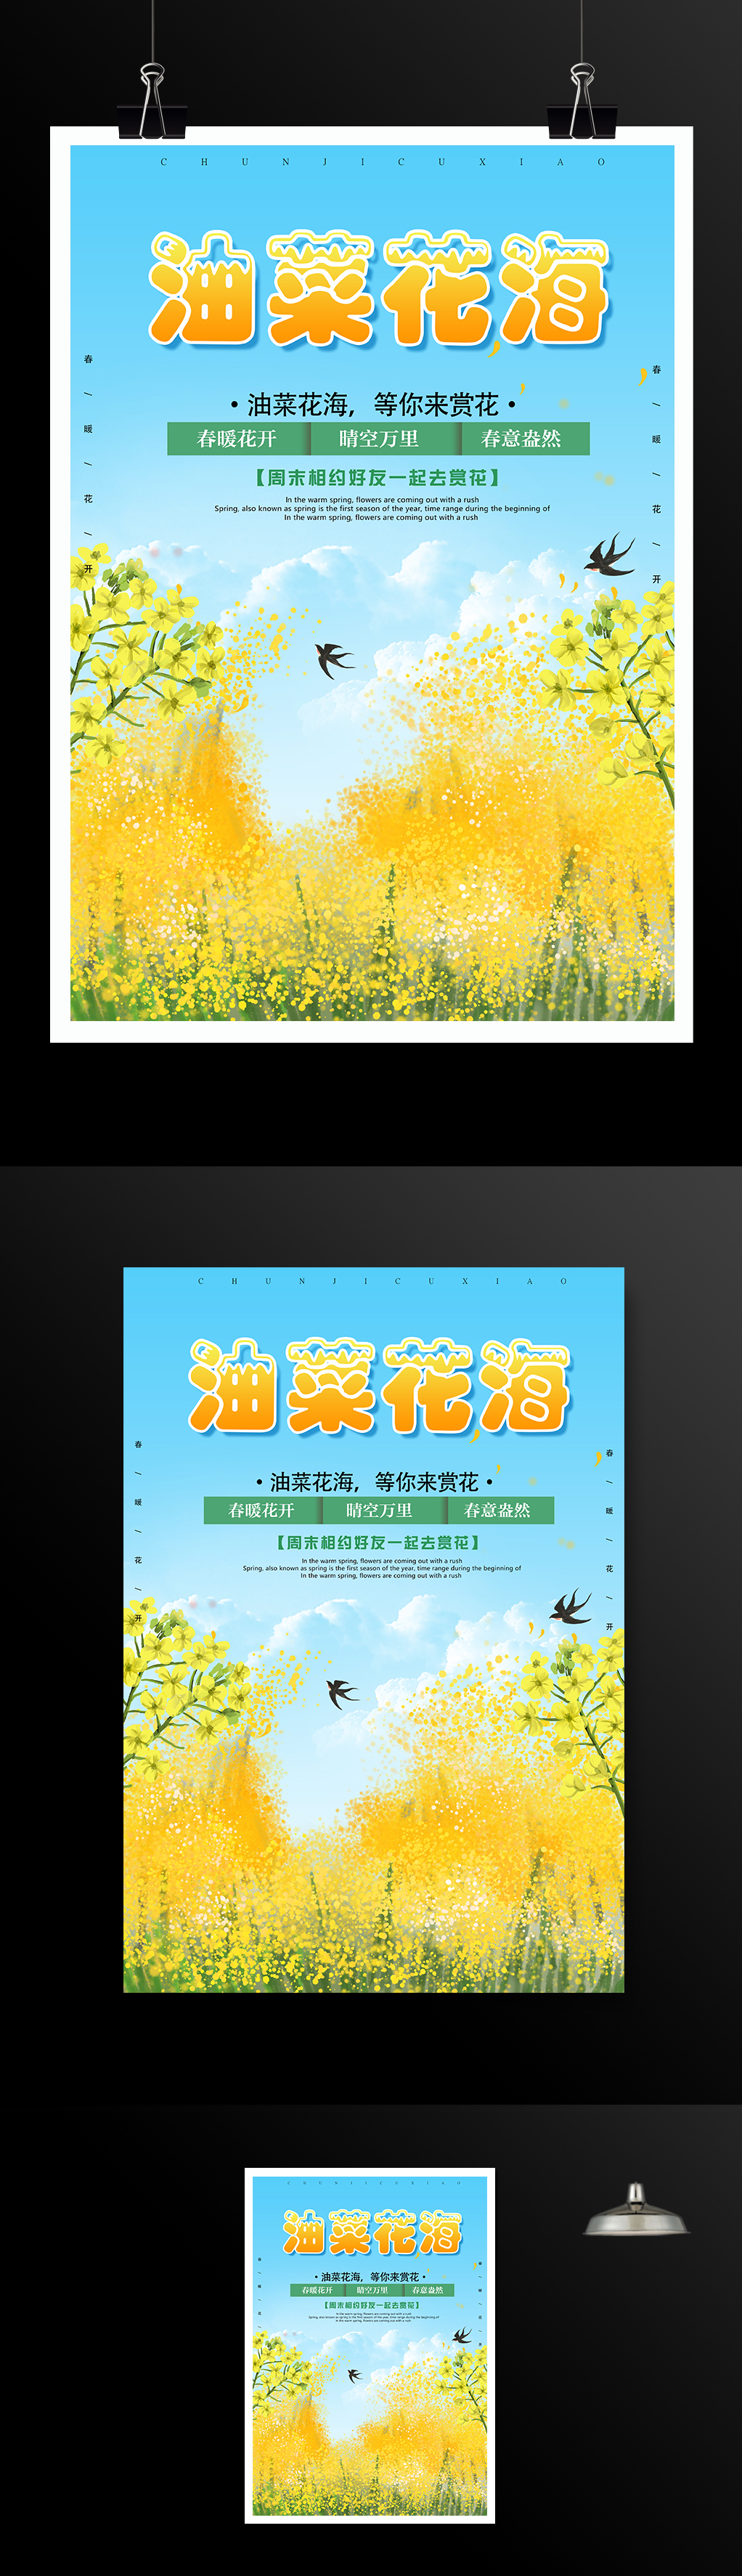 春天油菜花节活动海报模板